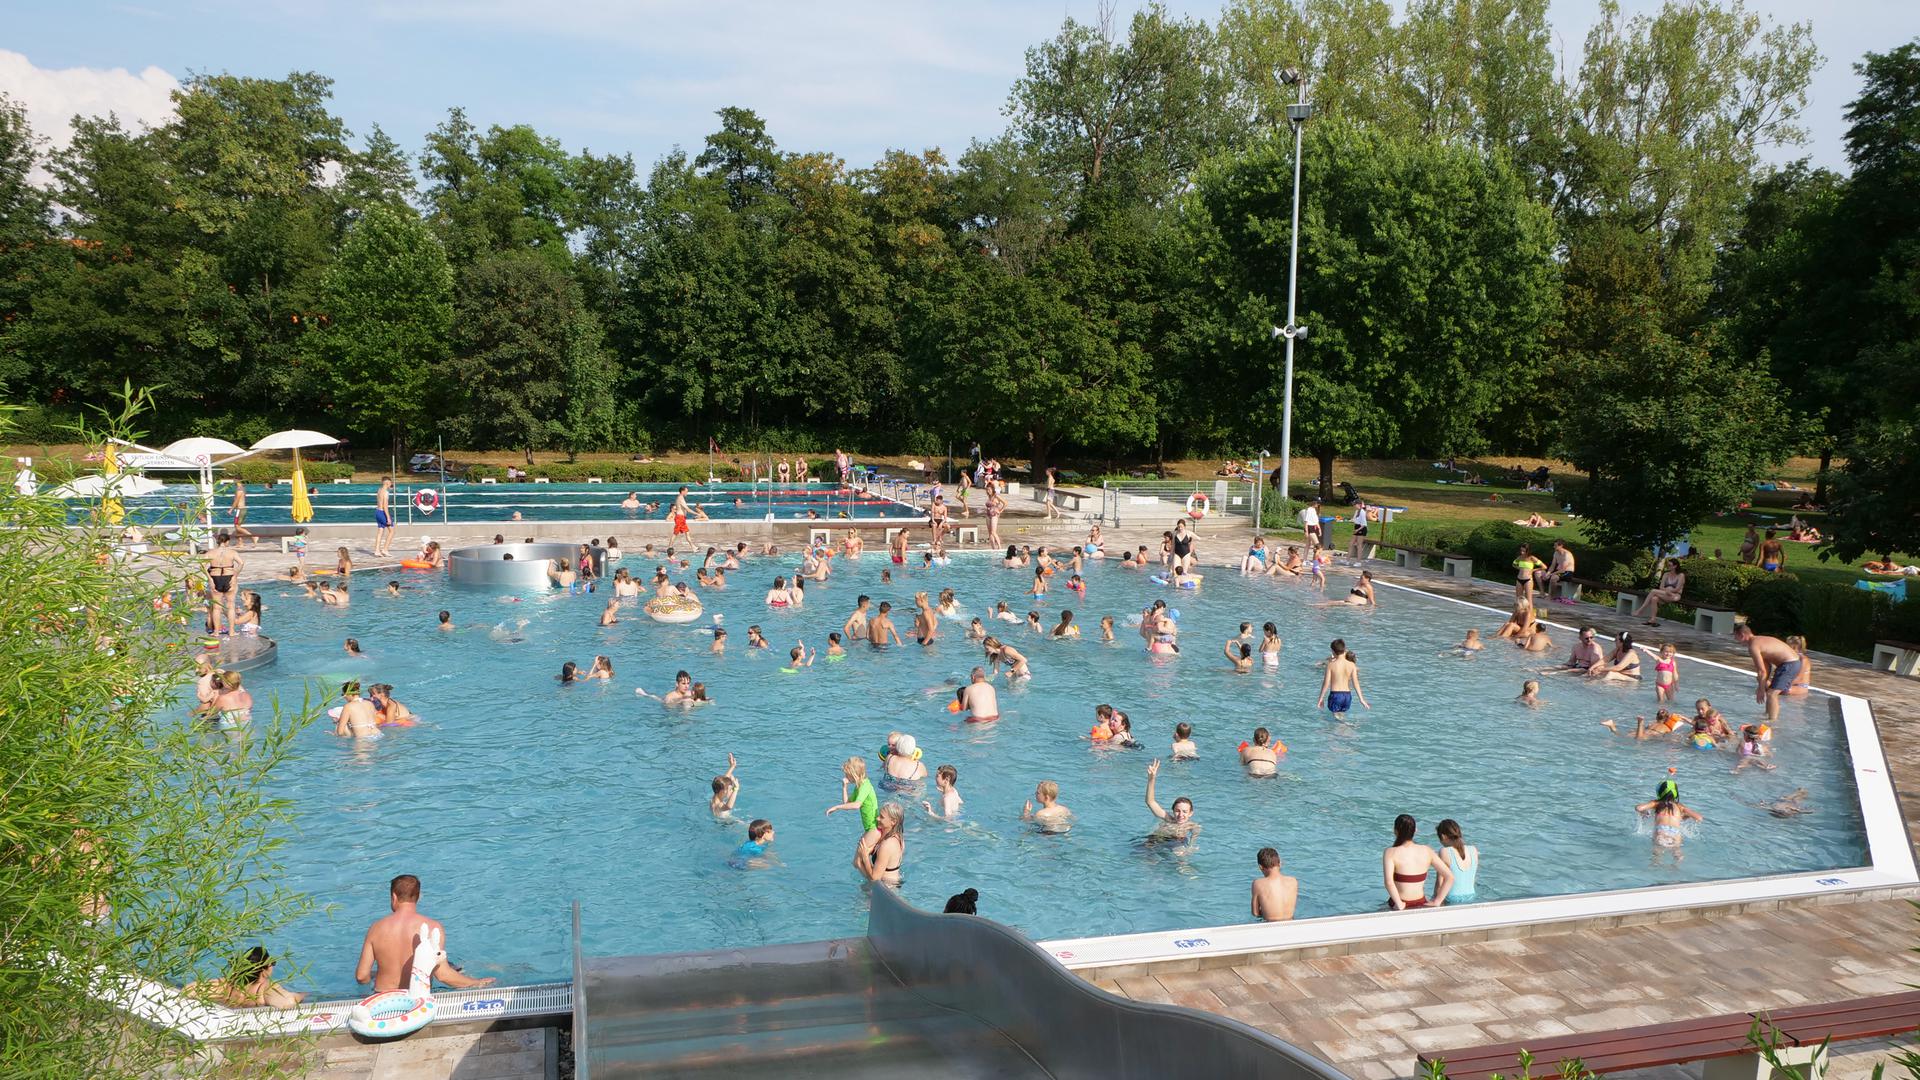 Unbeschwertes Badevergnügen erwartet man ab Mai unter anderem im Schlossbad in Remchingen. Es wird keine Einschränkungen mehr geben, wie noch im letzten Jahr der Fall. Jahreskarten sind zudem seit dieser Woche im Vorverkauf erhältlich.